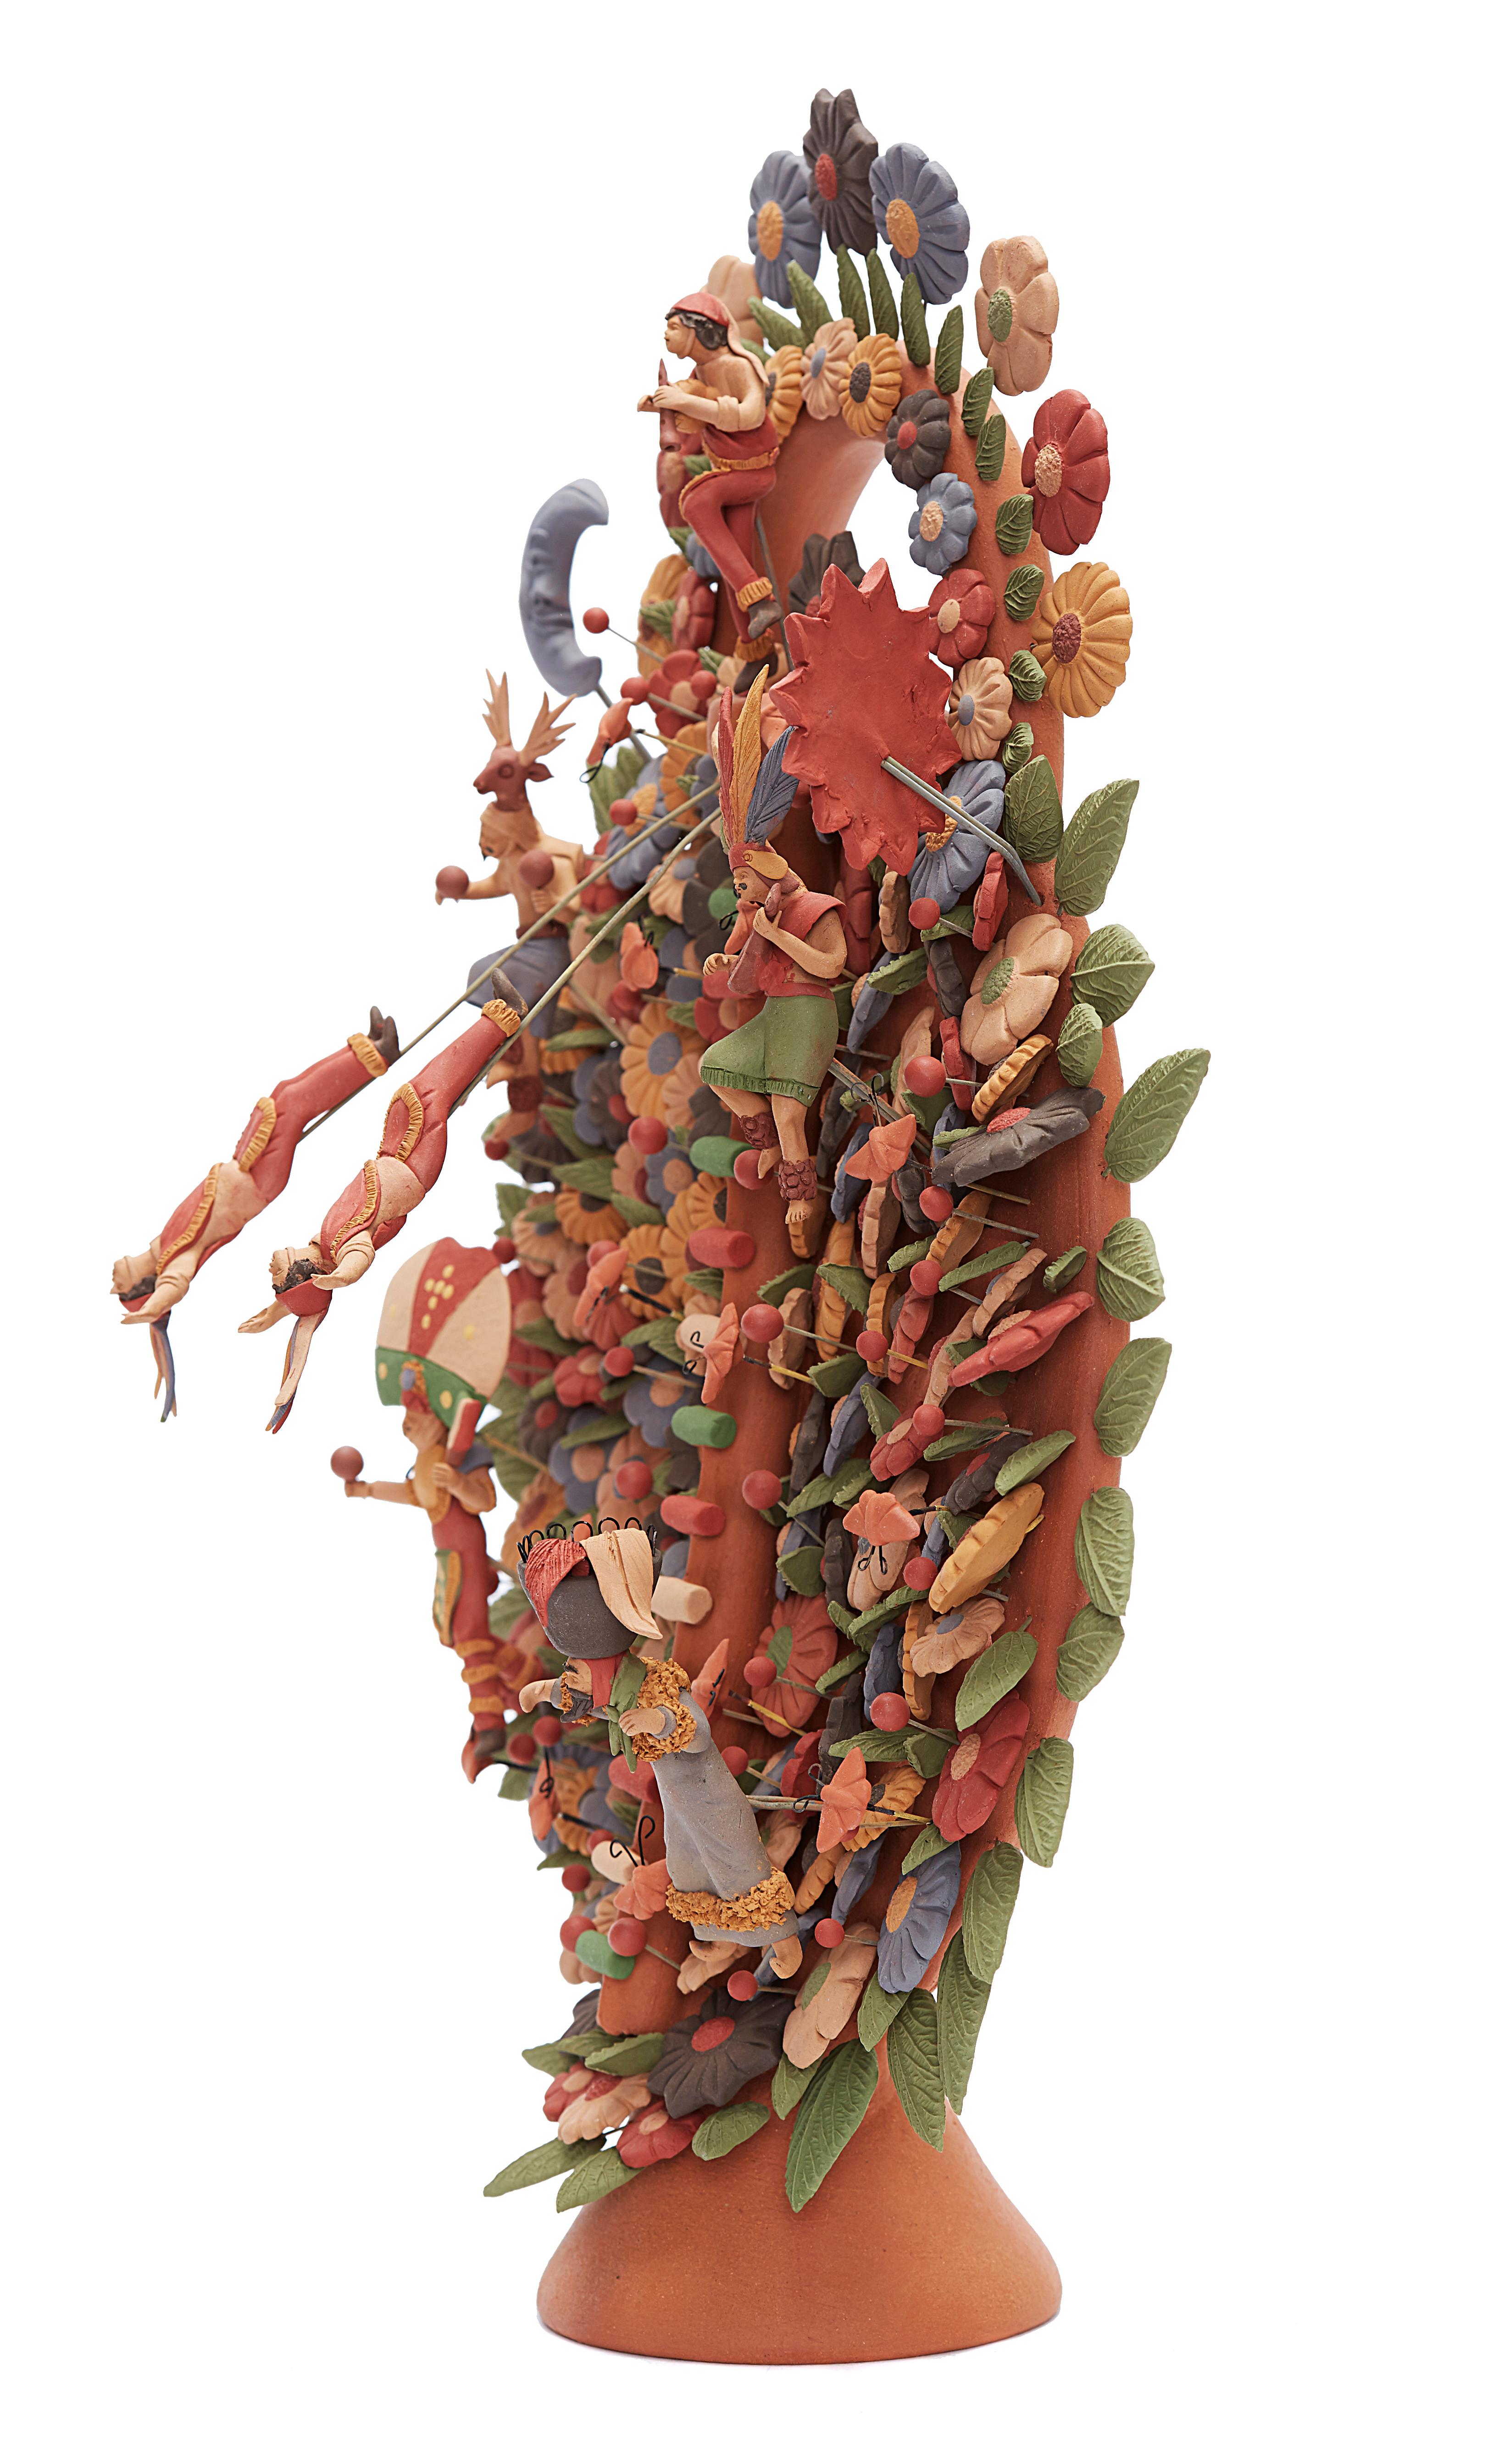 Arbol de Danzantes - Dancers Tree / Ceramics Mexican Folk Art Clay 10